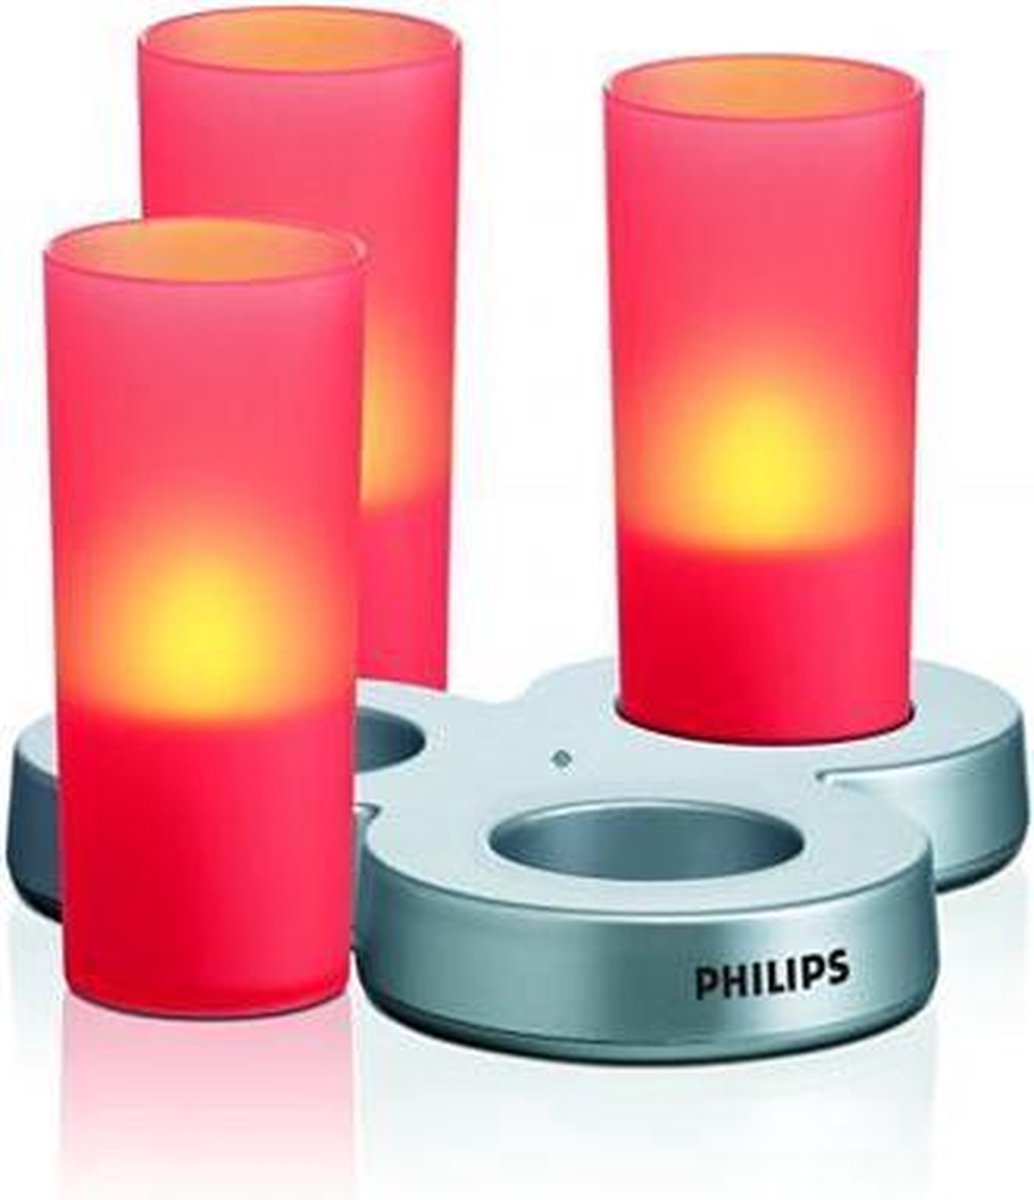 Philips led-kaars imageo rood | bol.com